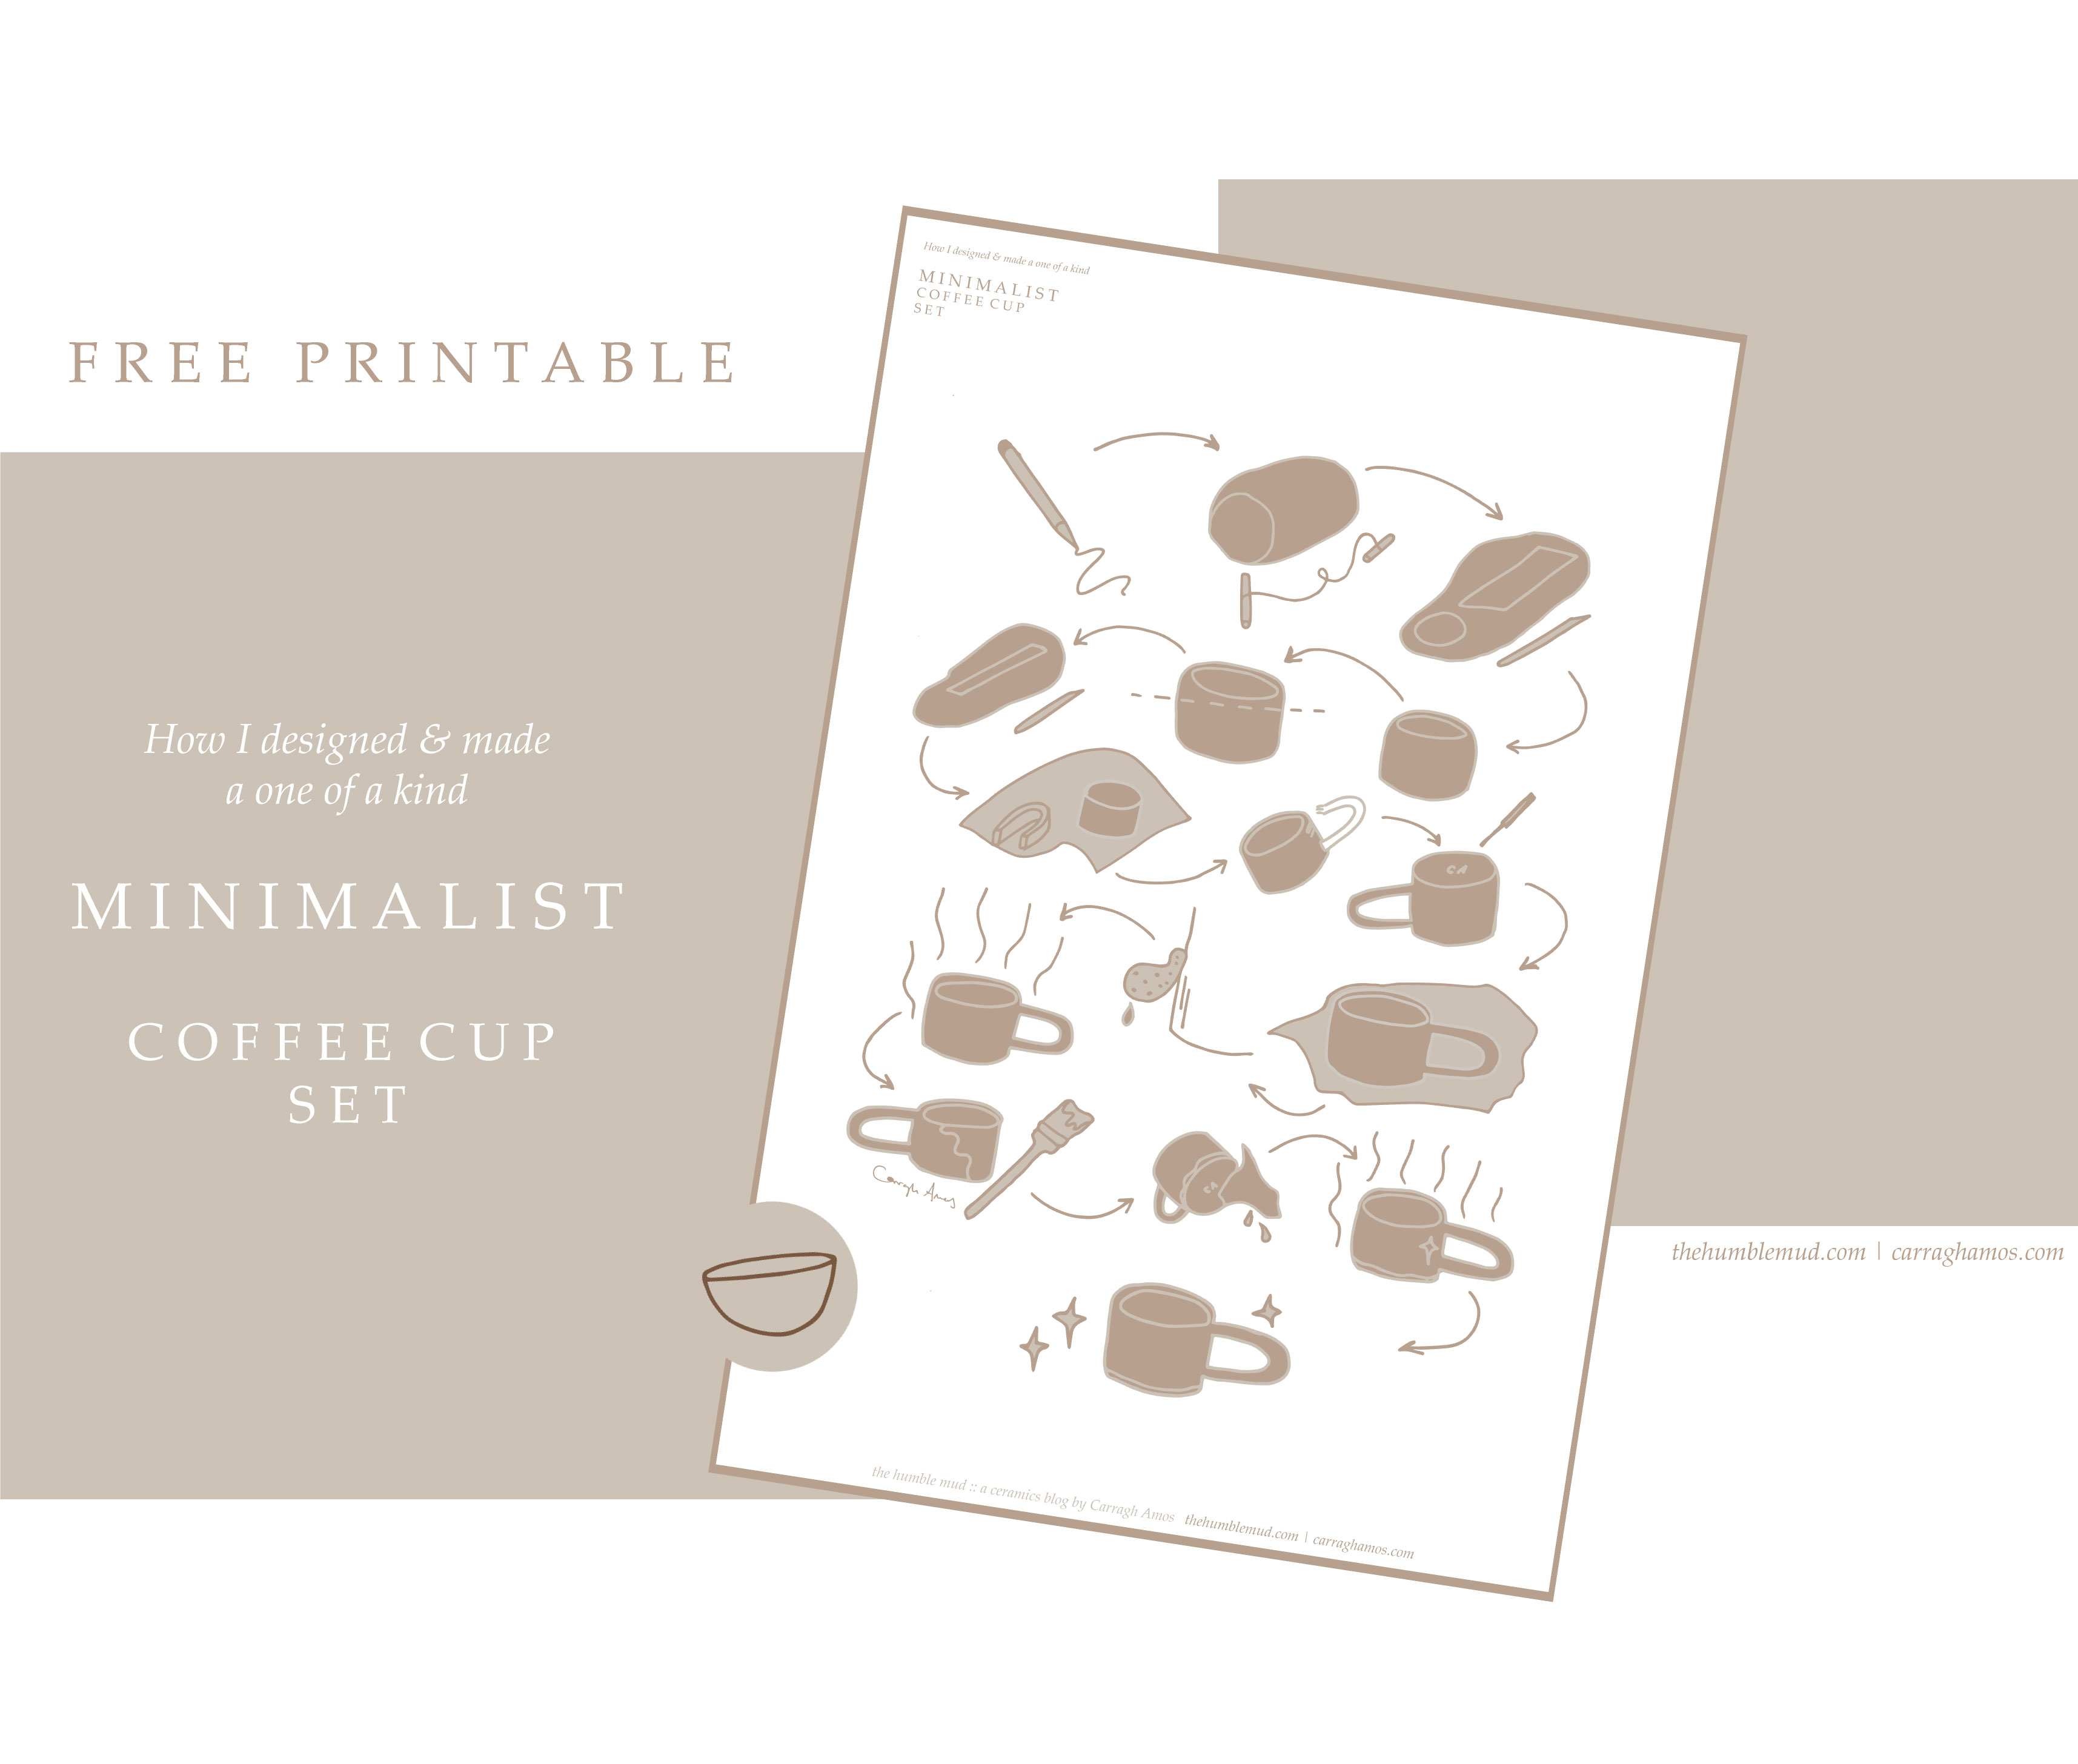  Imprimible gratis: Cómo hacer una taza hecha a mano construida en losa imprimible gratis. Instrucciones de juego de tazas de café minimalistas ilustradas.